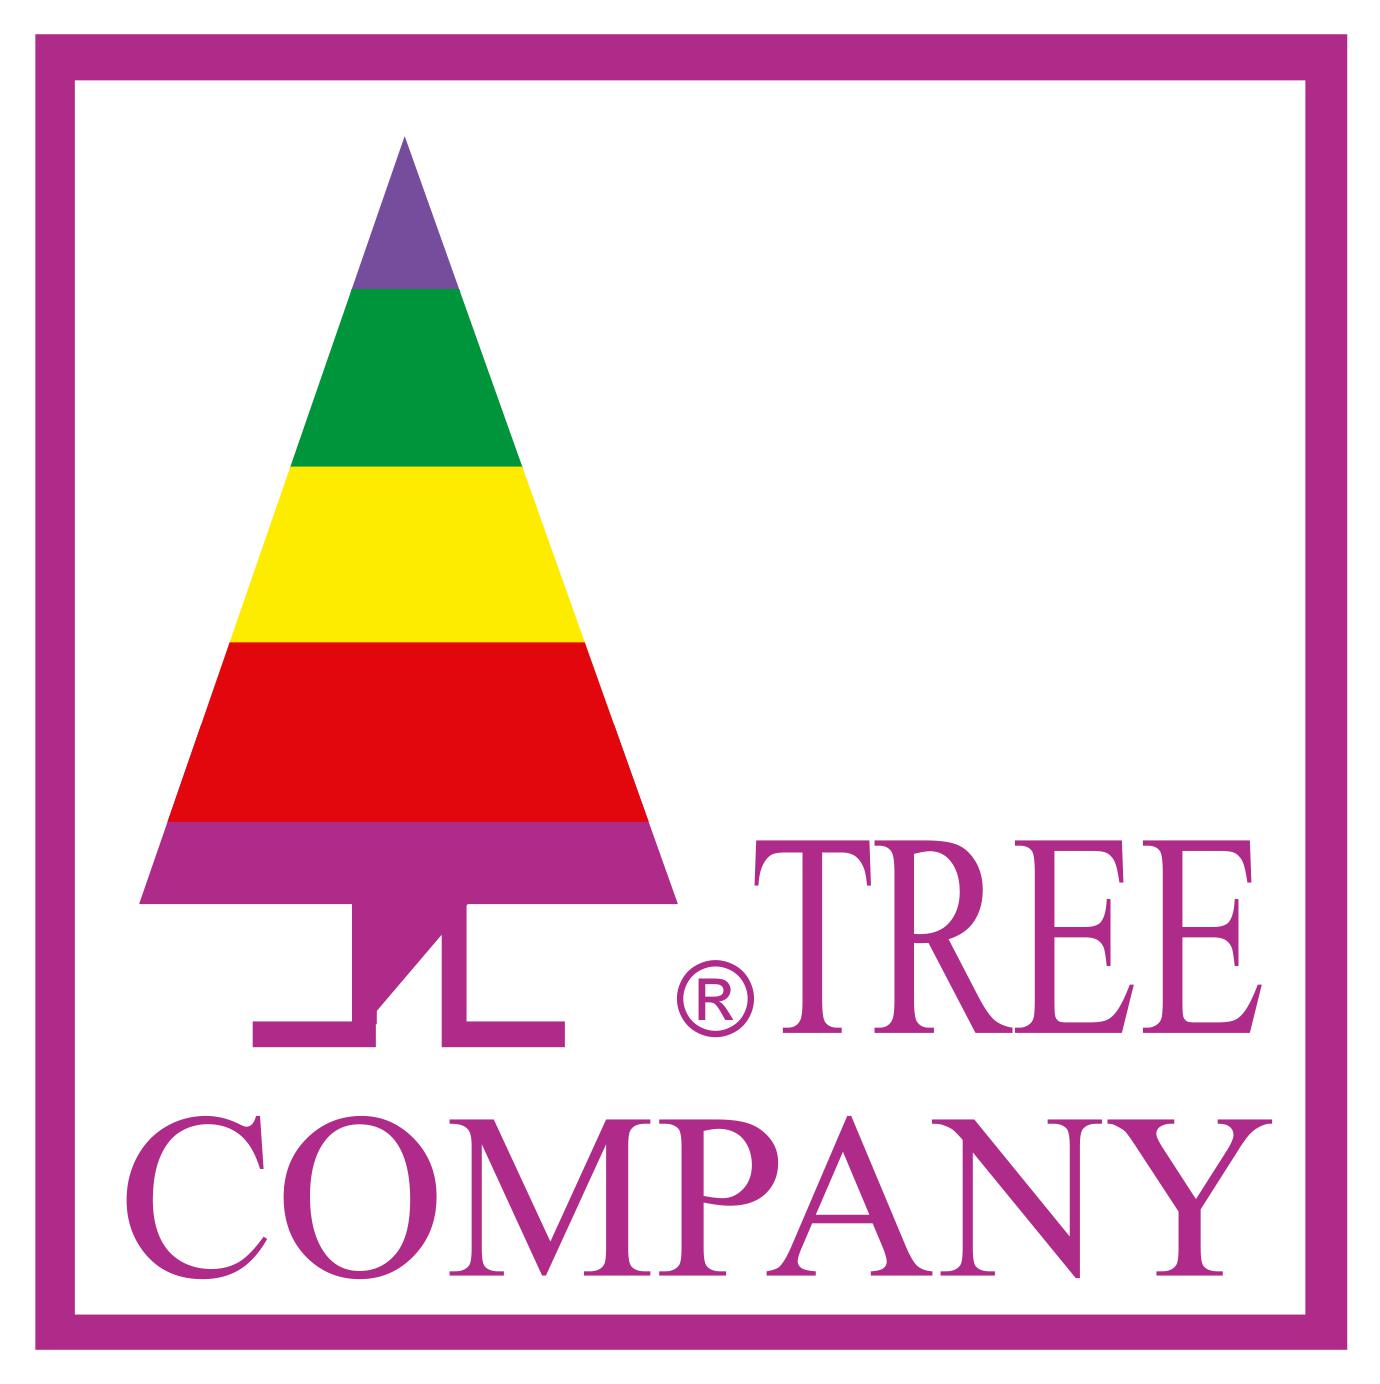 TREE COMPANY CORPORATION S.A